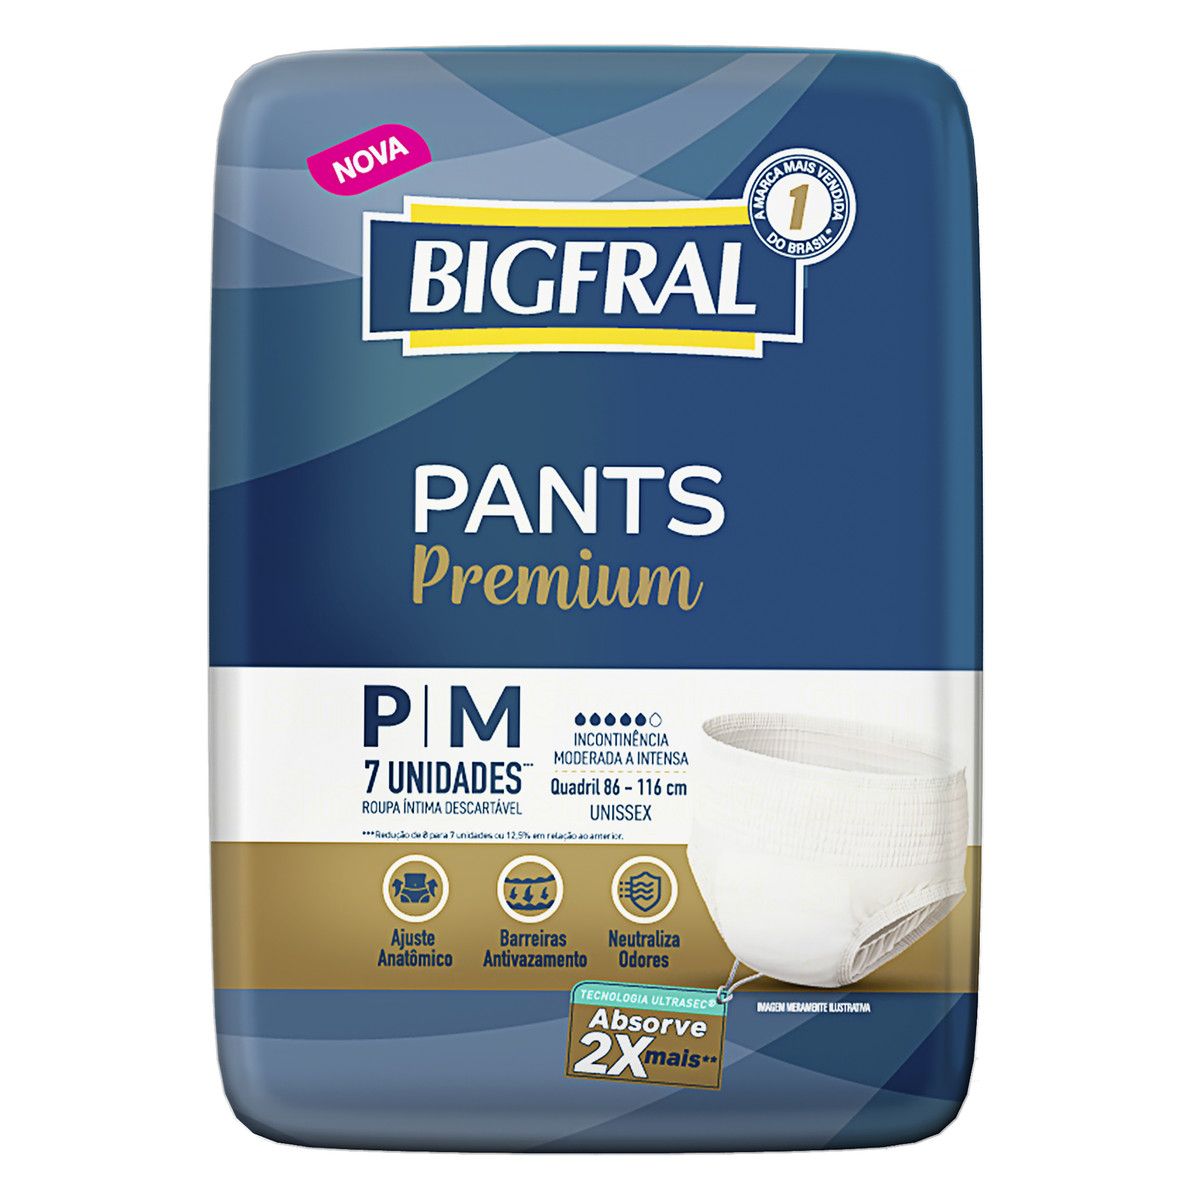 Roupa Íntima Descartável Unissex Bigfral Pants Premium P/M Pacote 7 Unidades